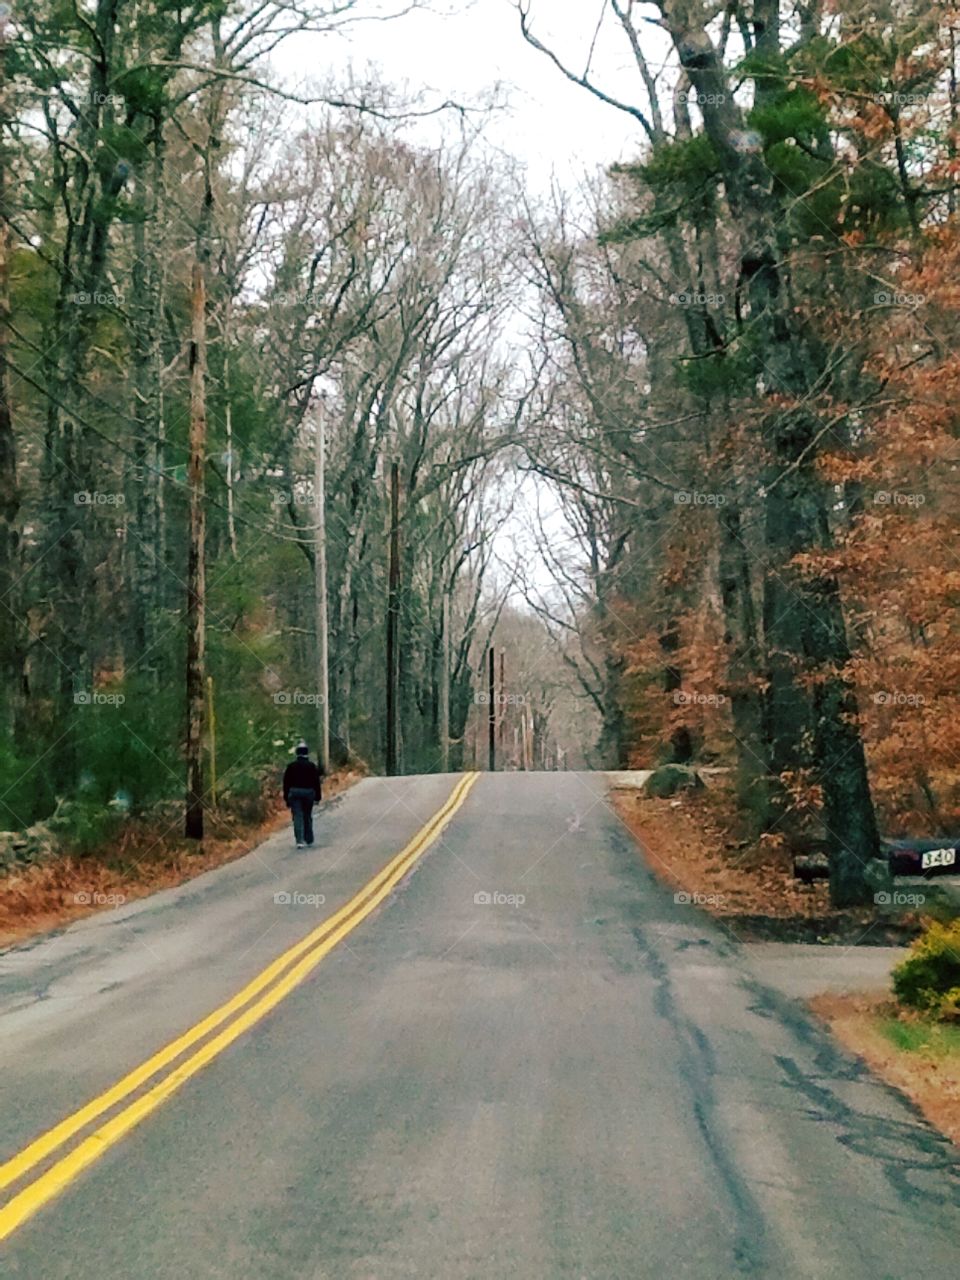 Walking in Winter in New England, no sidewalks.